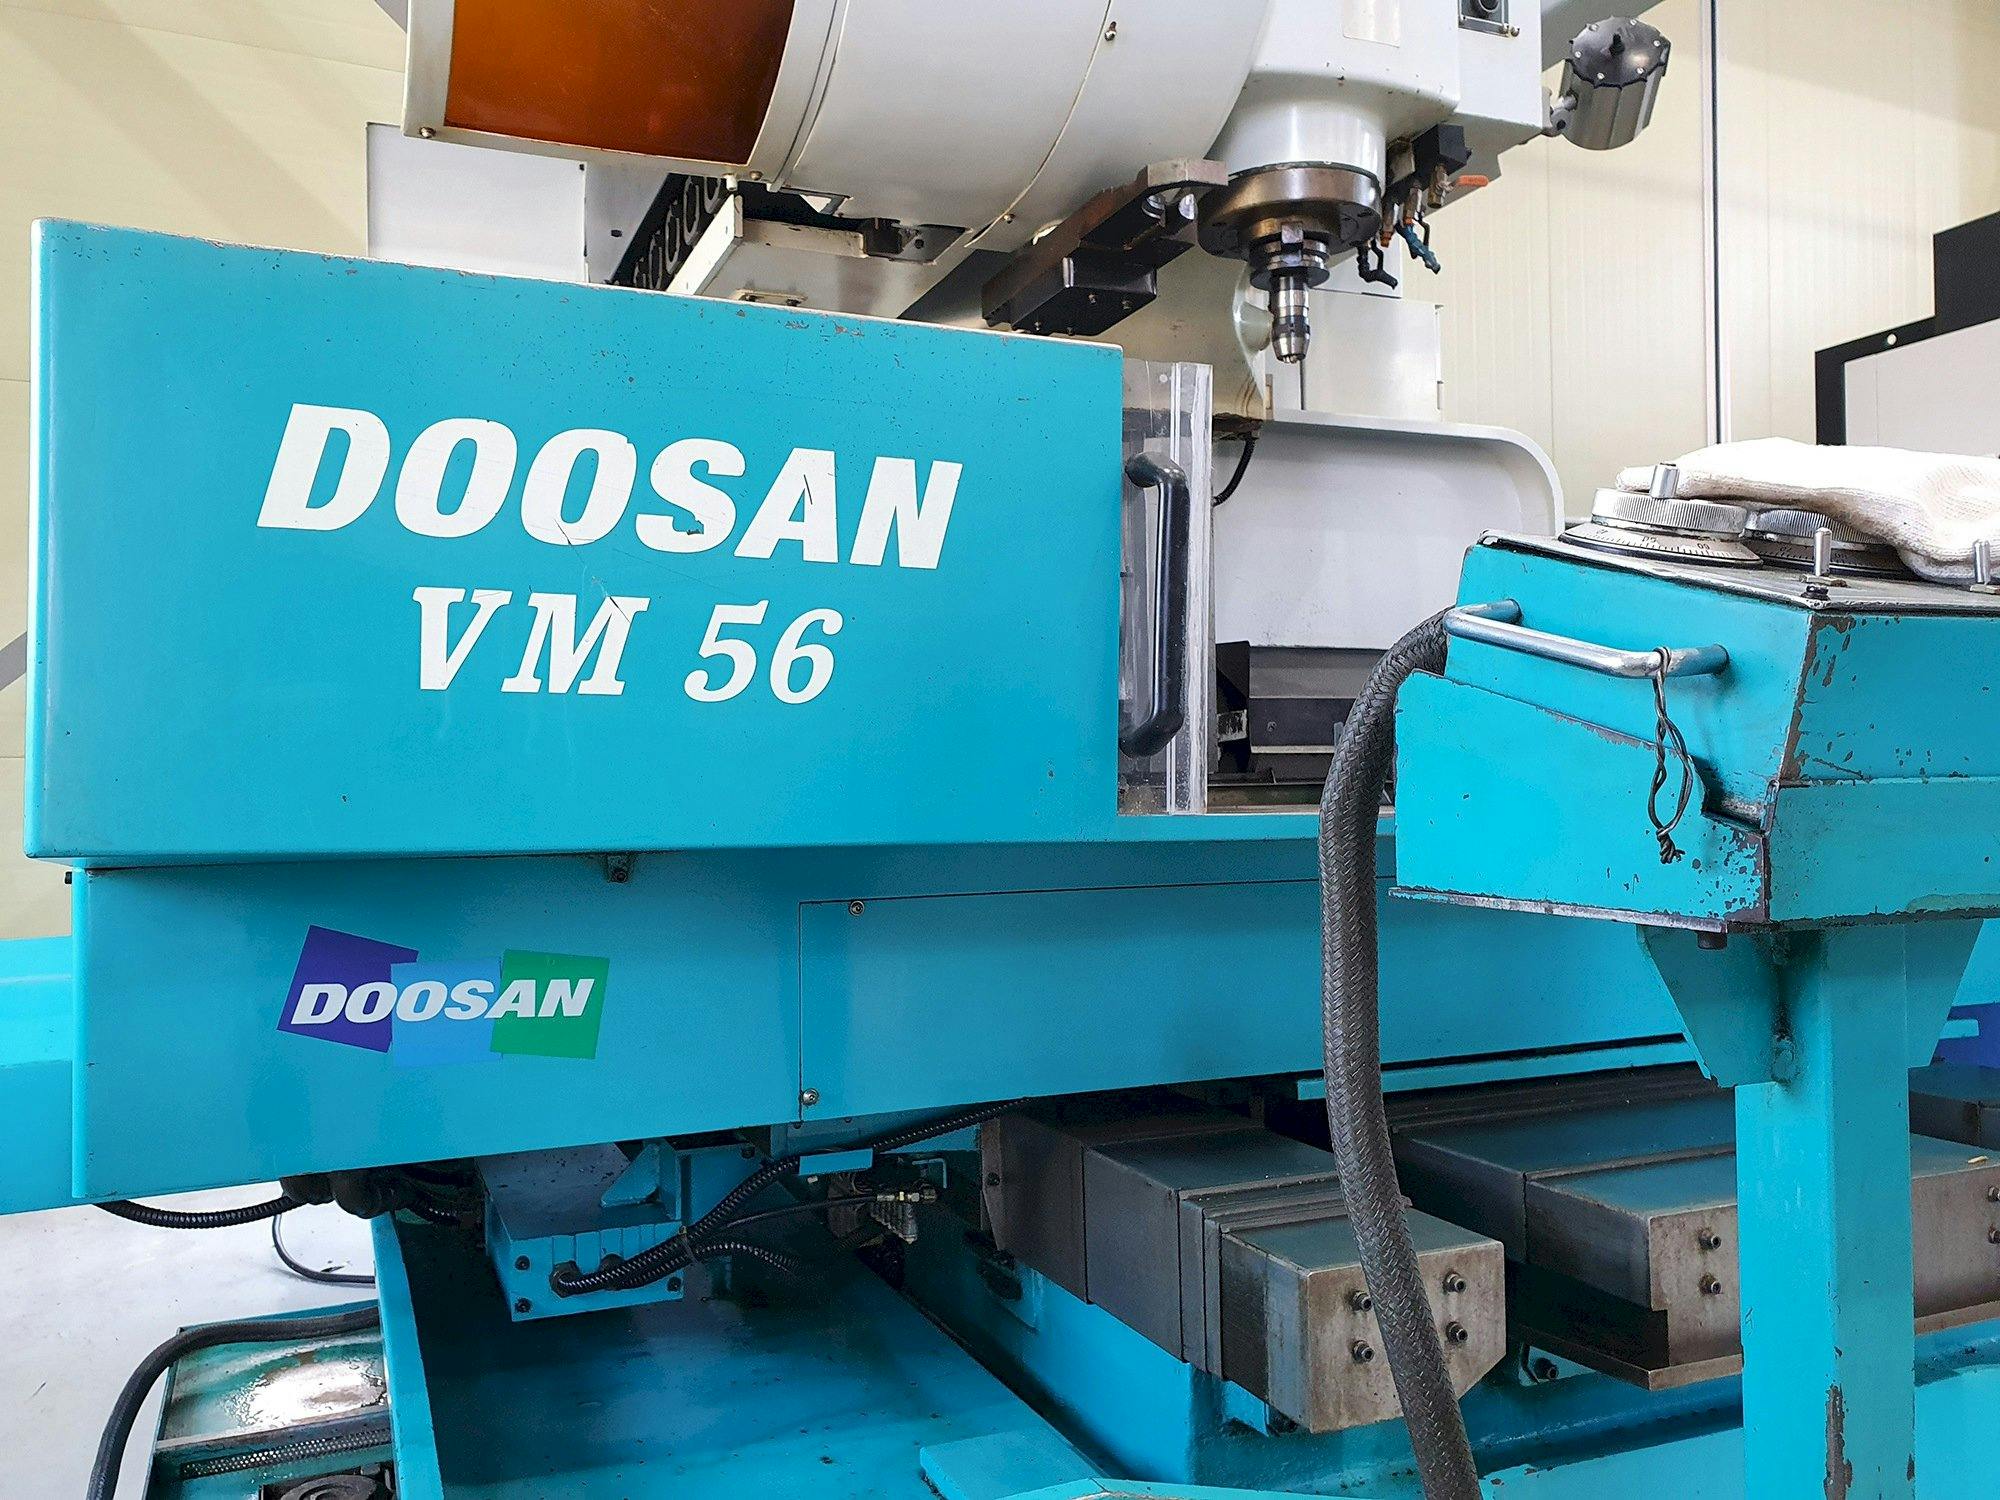 Čelní pohled  na Doosan VM56  stroj